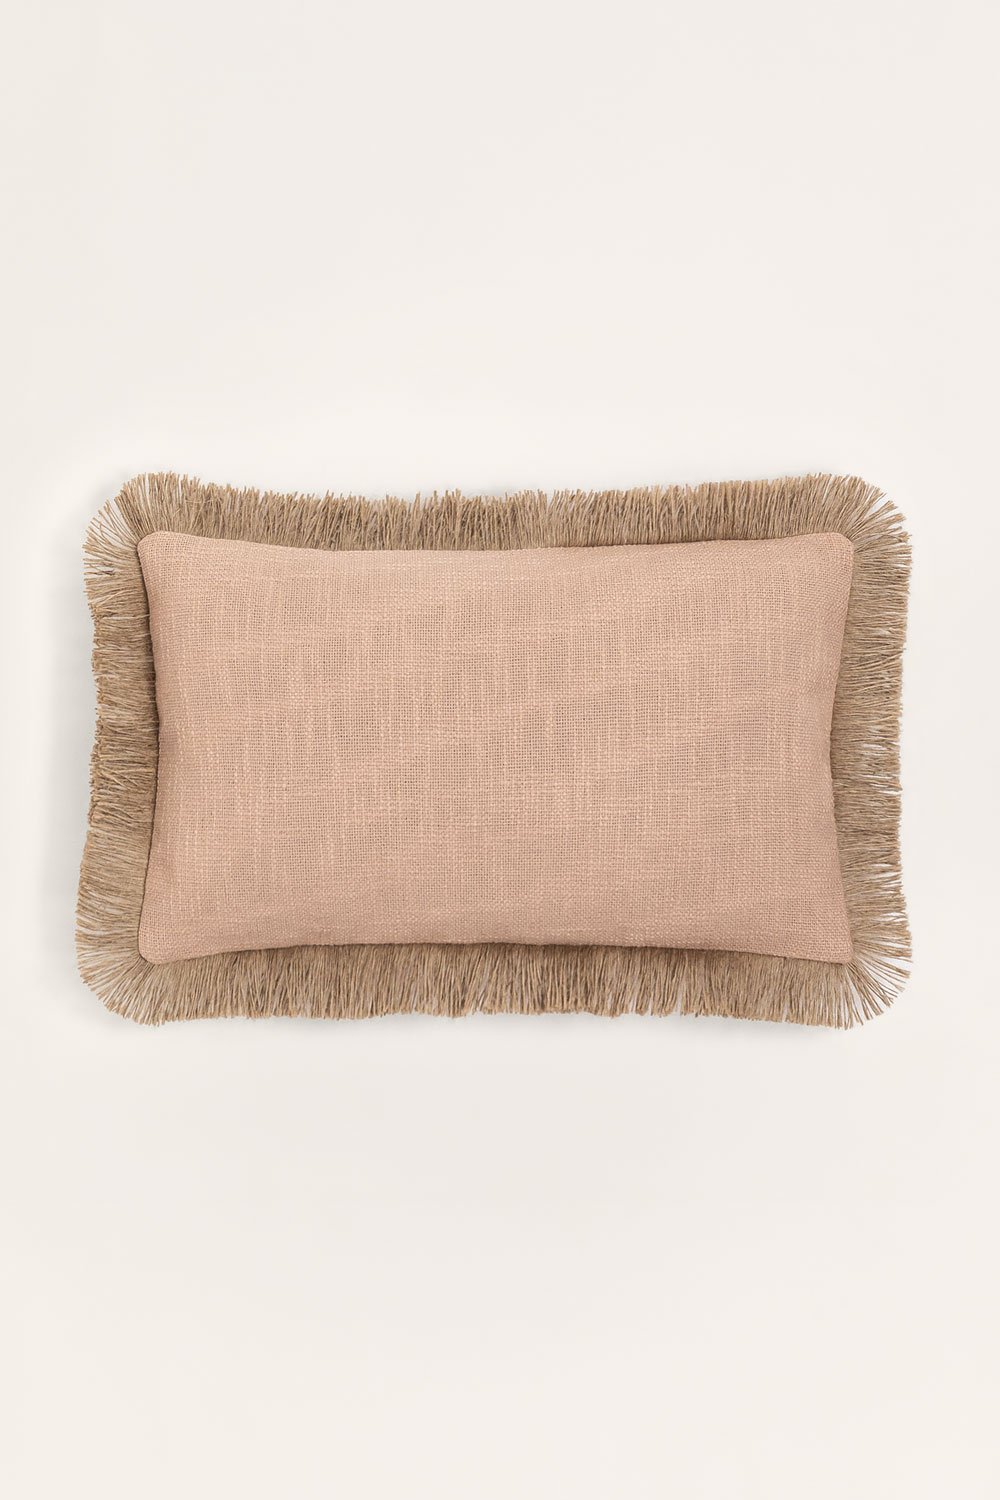 Prostokątna poduszka bawełniana (30x50 cm) Paraiba, obrazek w galerii 1